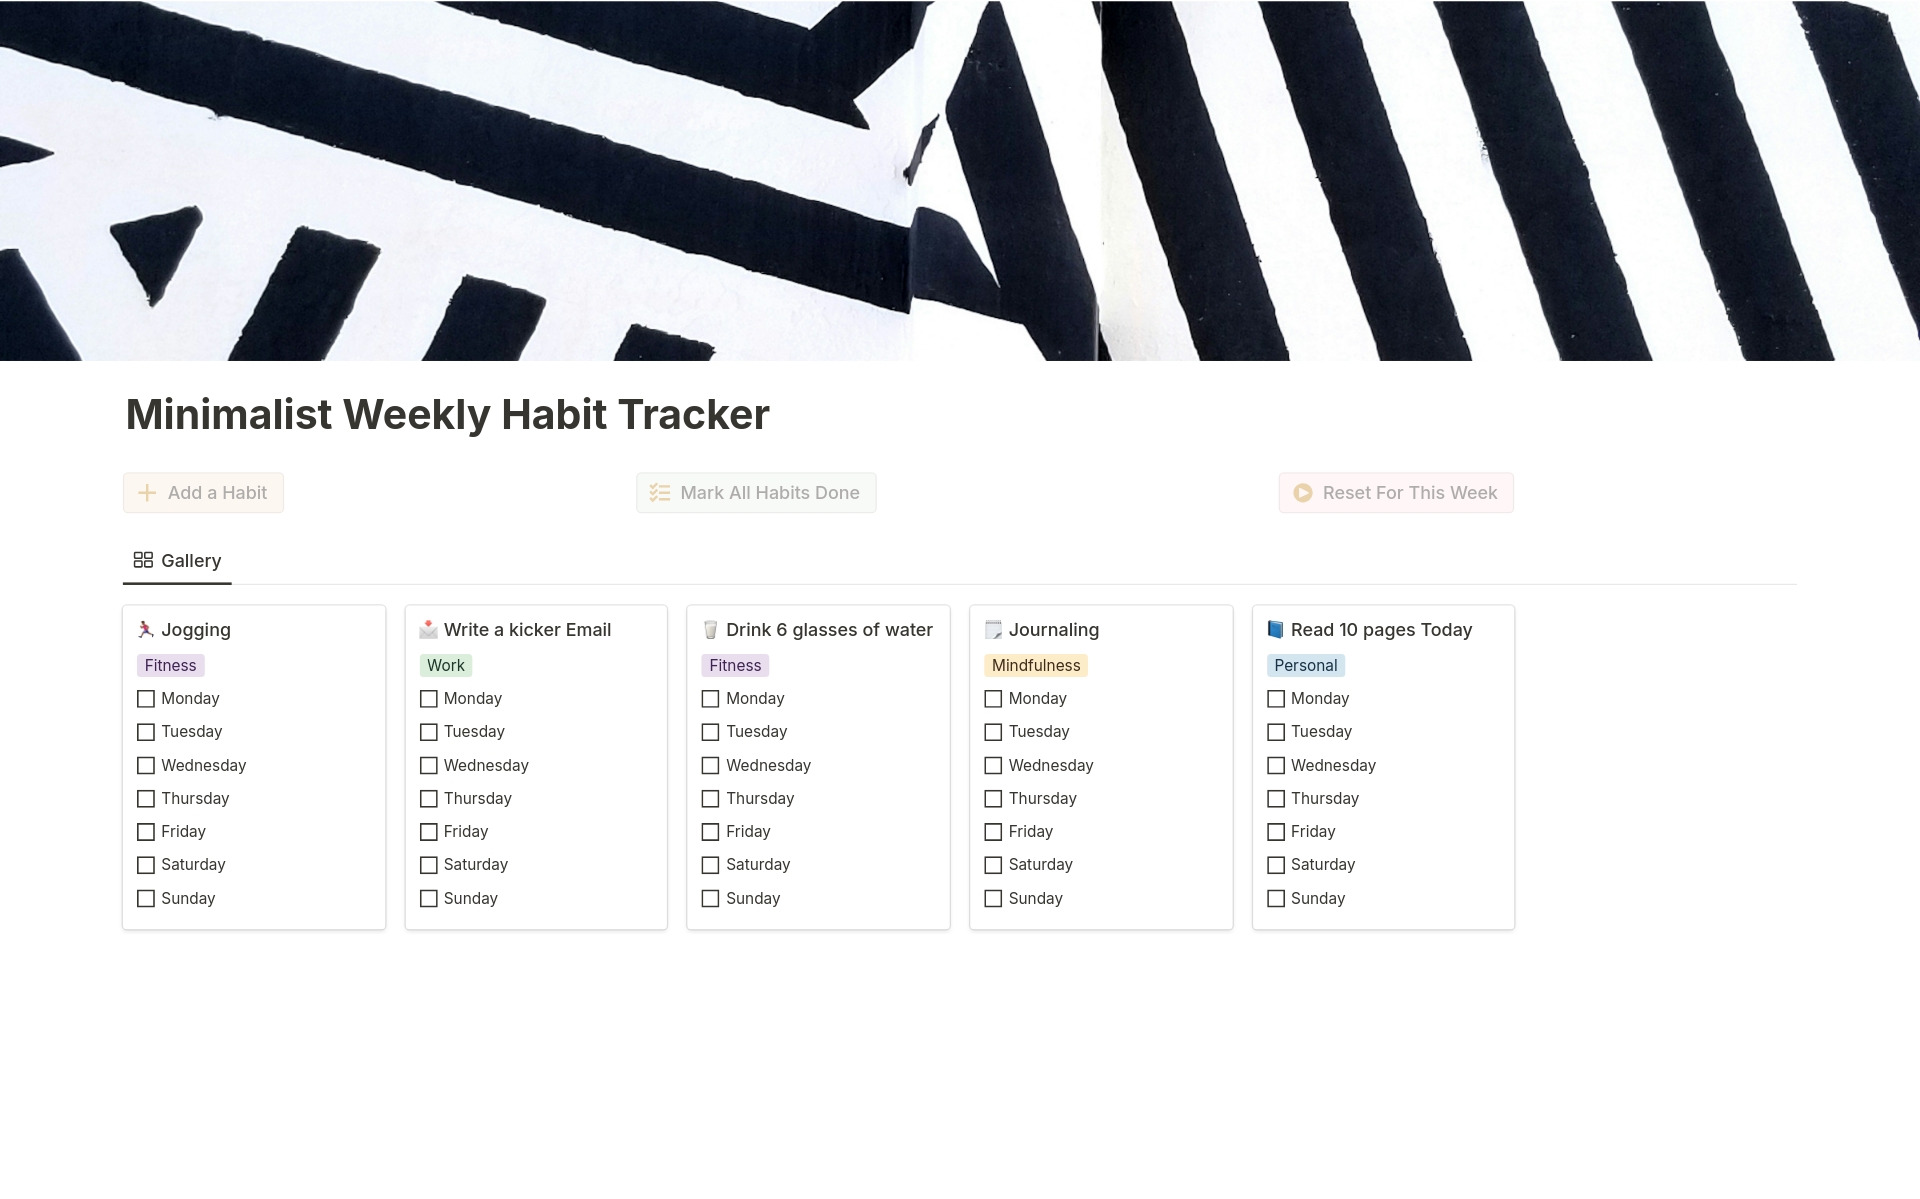 Vista previa de una plantilla para Minimalist Weekly Habit Tracker